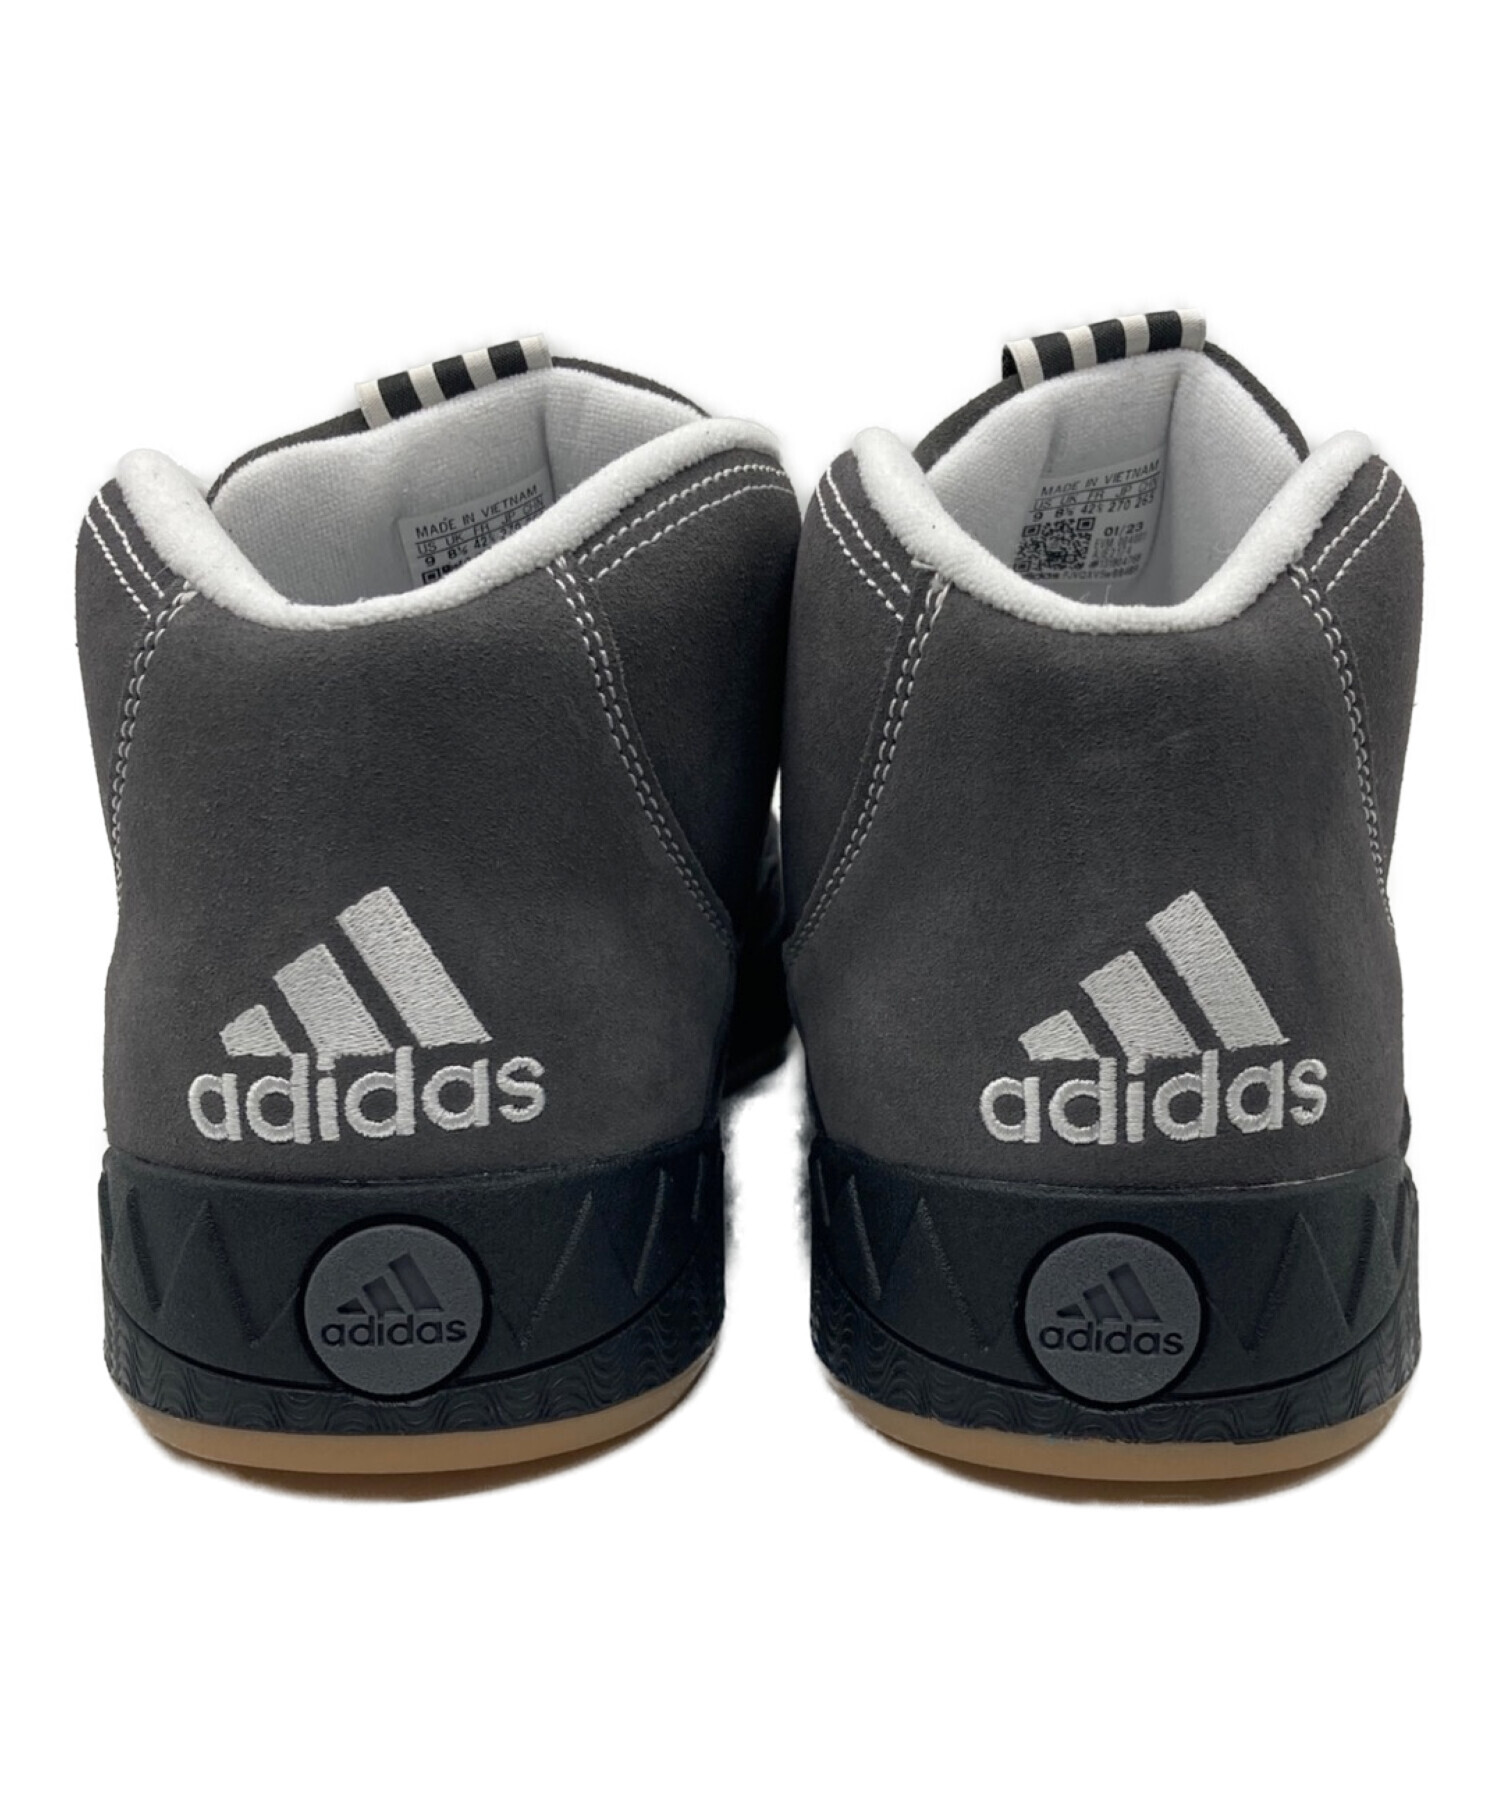 adidas (アディダス) Adimatic Mid グレー サイズ:27㎝